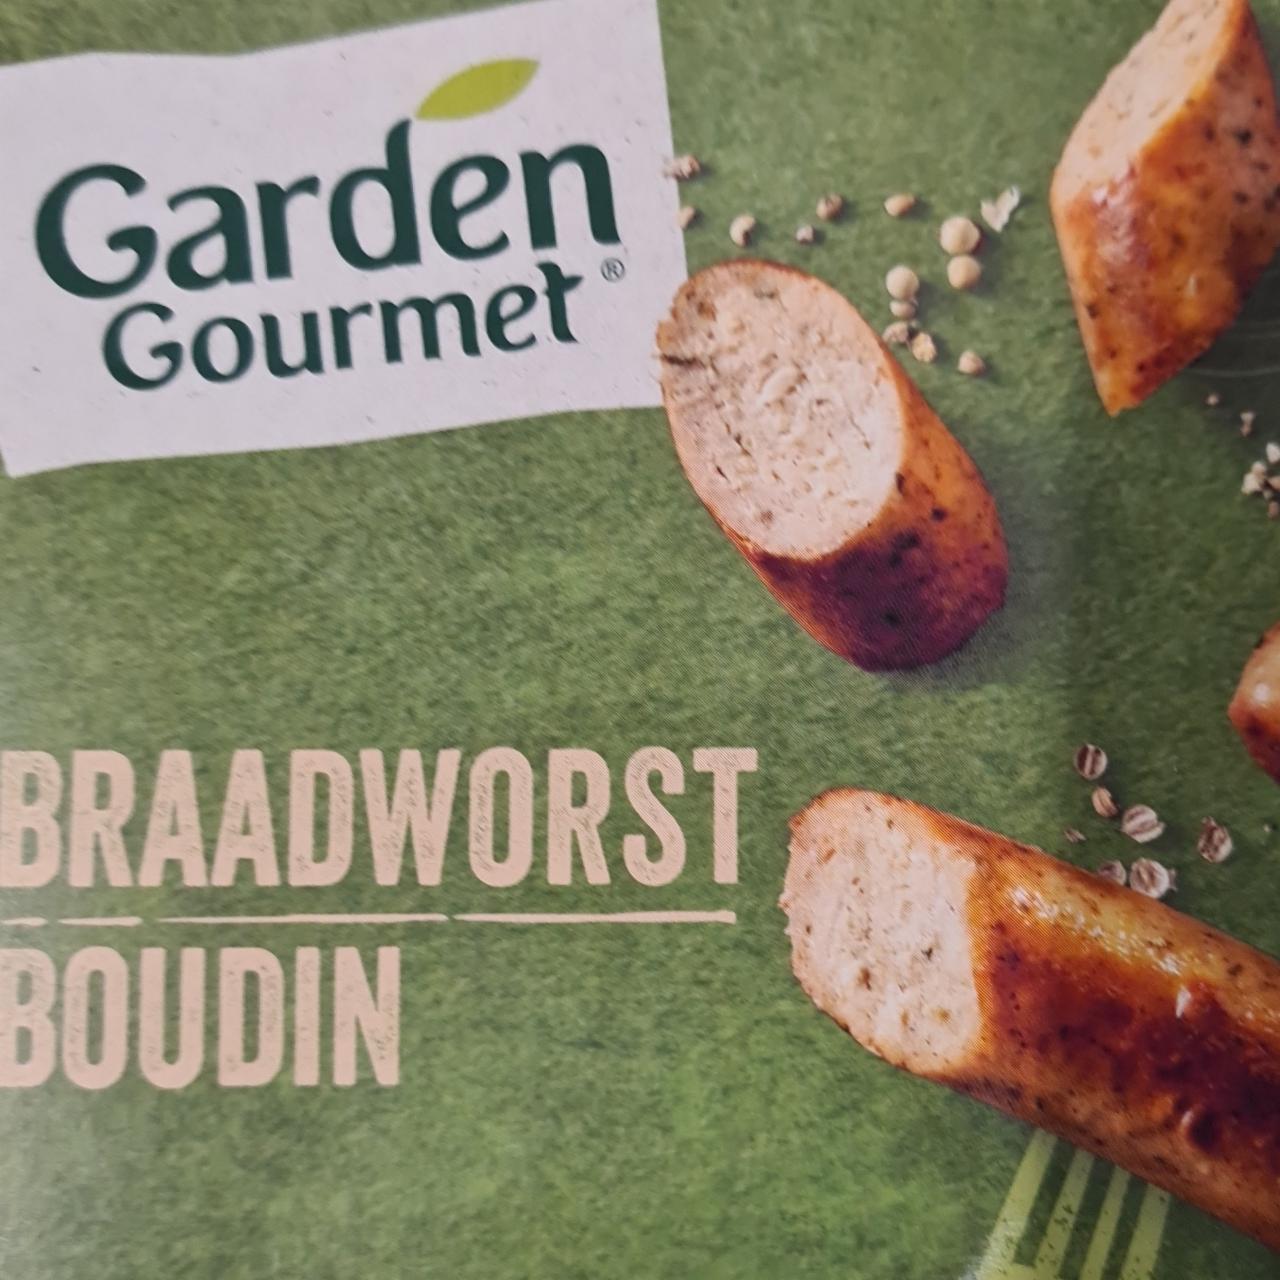 Fotografie - Braadworst boudin Garden Gourmet